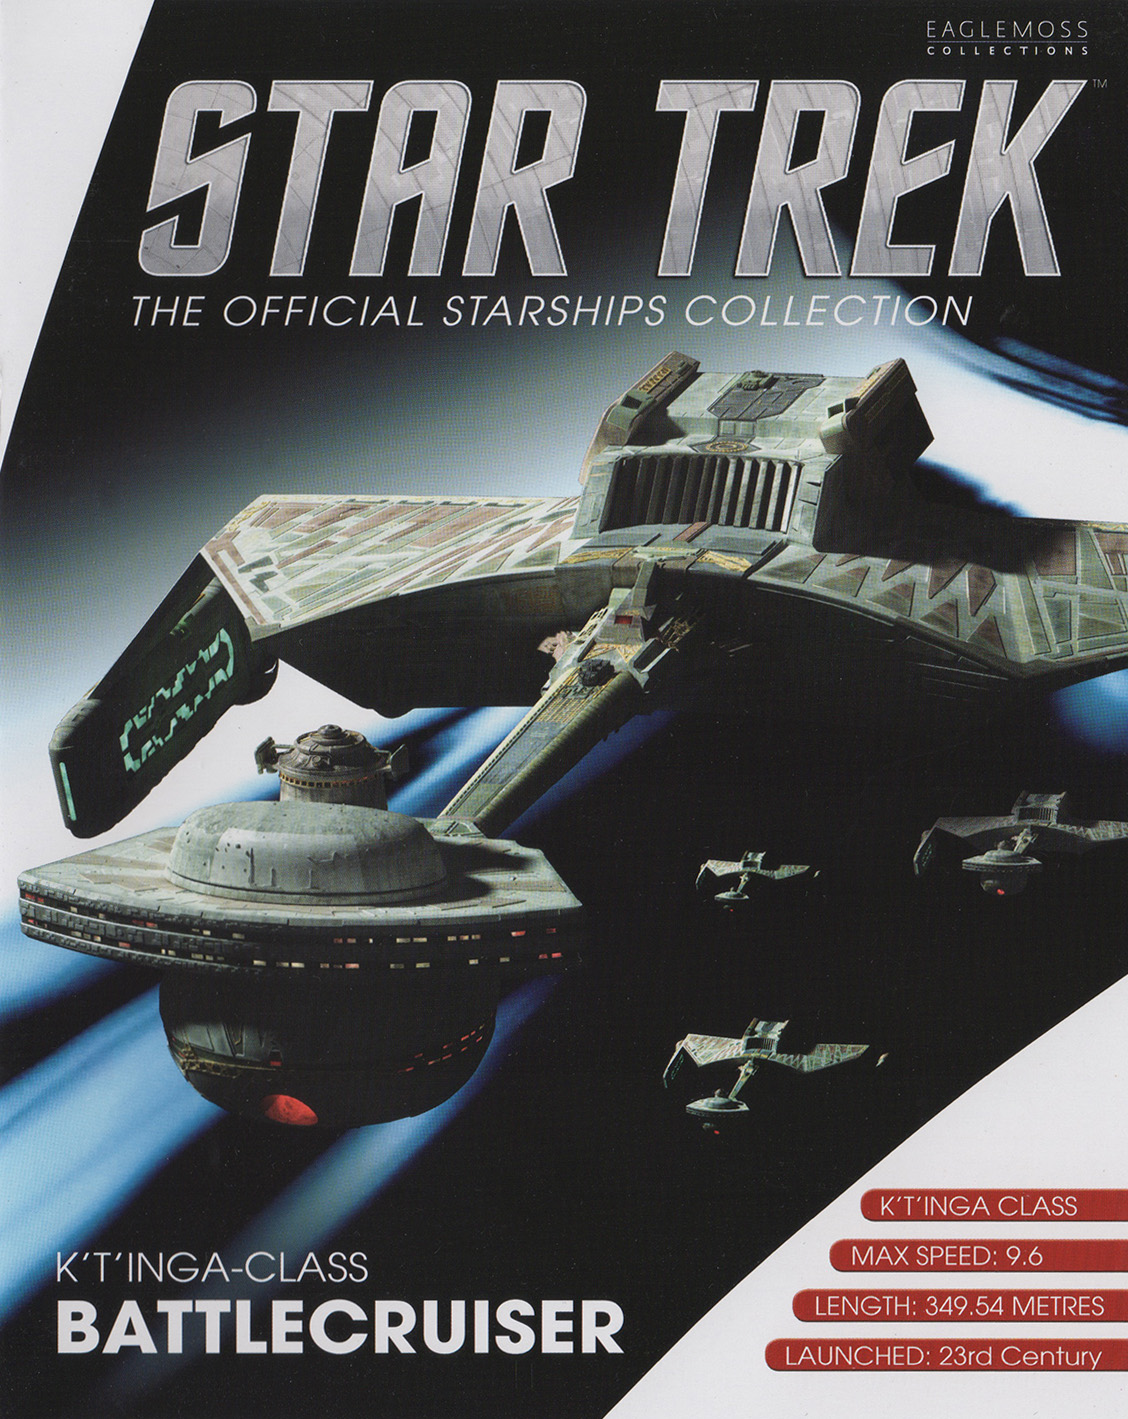 Eaglemoss Star Trek Starships Repack Magazine Klingon K't'inga